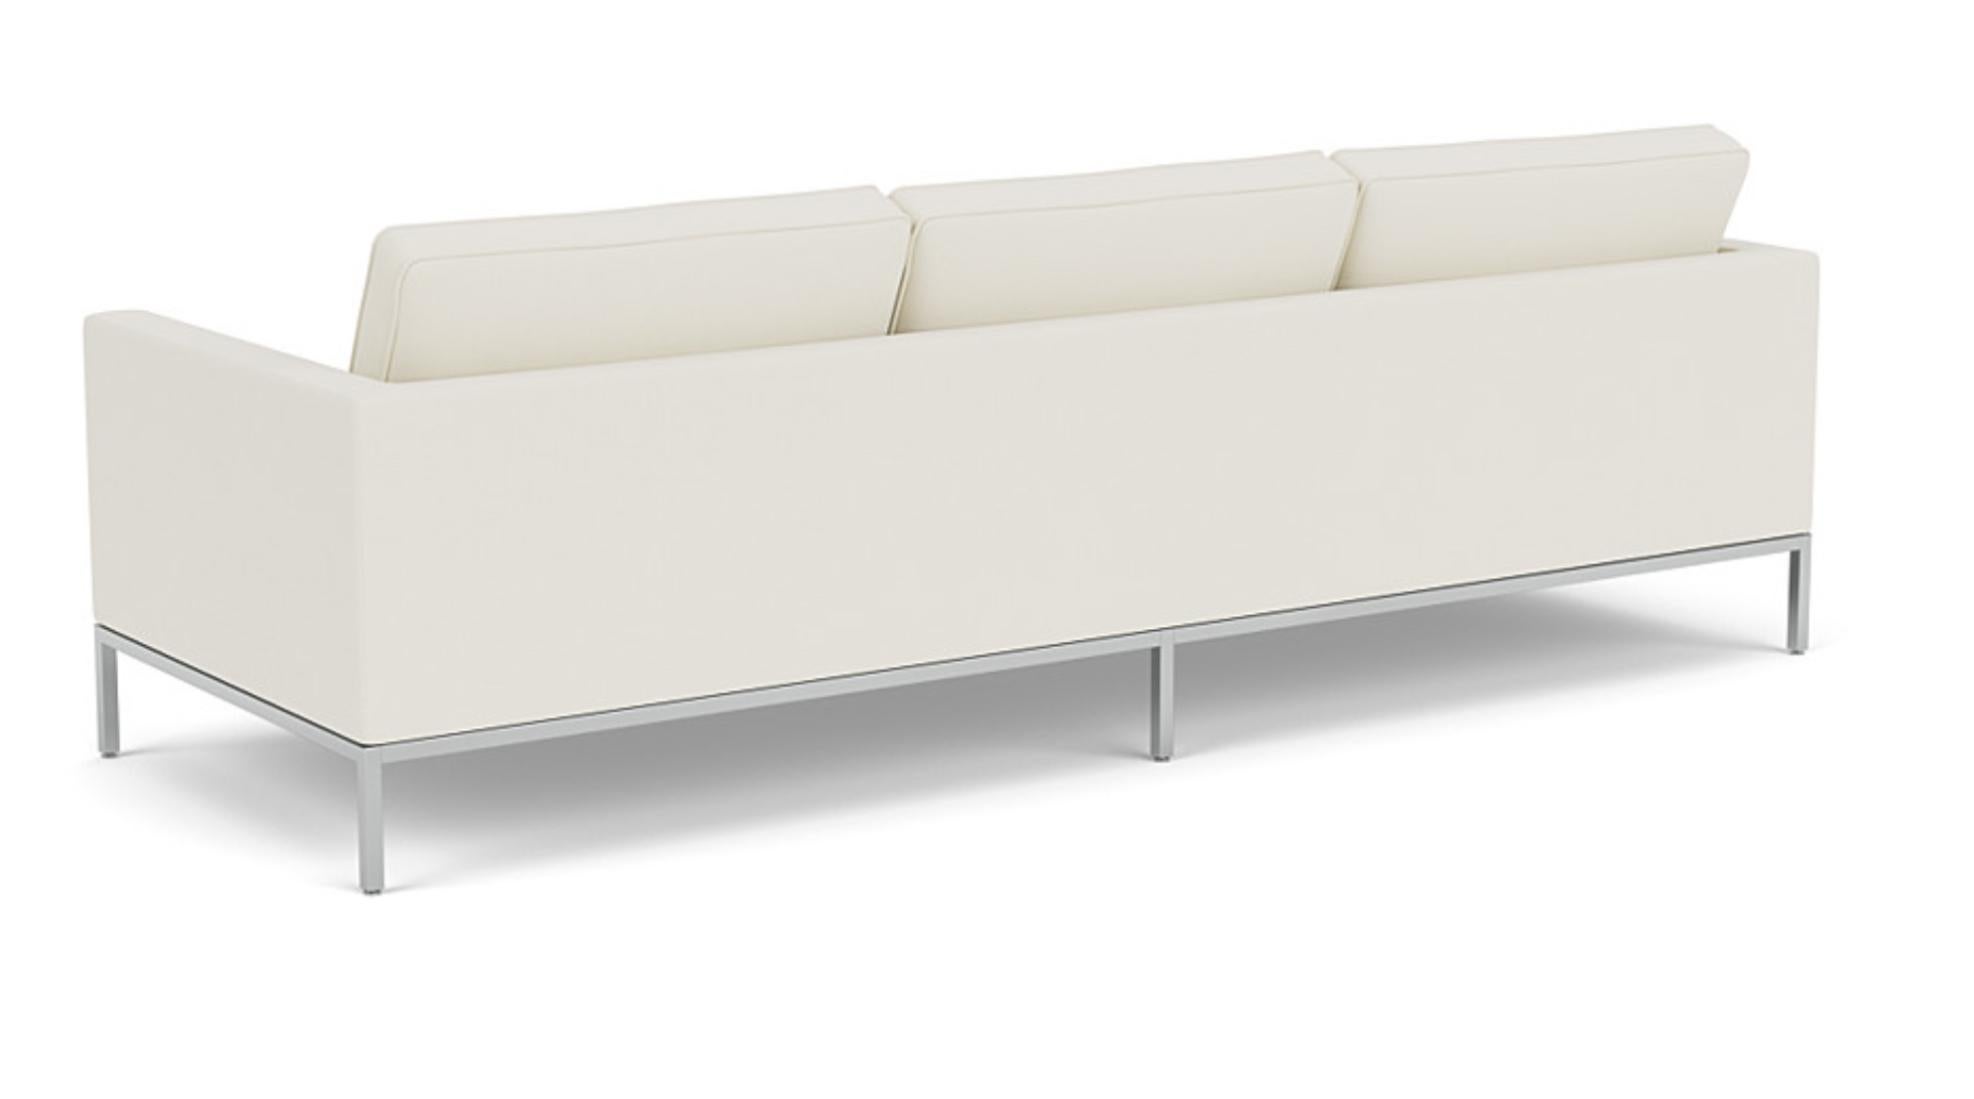 Florence Knoll für Knoll Original Tufted 3-Seat Sofa Cream White, USA 1954-2000s. Das Florence Knoll Sofa ist eine durch Farbe und Textur erwärmte, verkleinerte Übersetzung des Rhythmus und der Proportionen der modernen Architektur der Mitte des